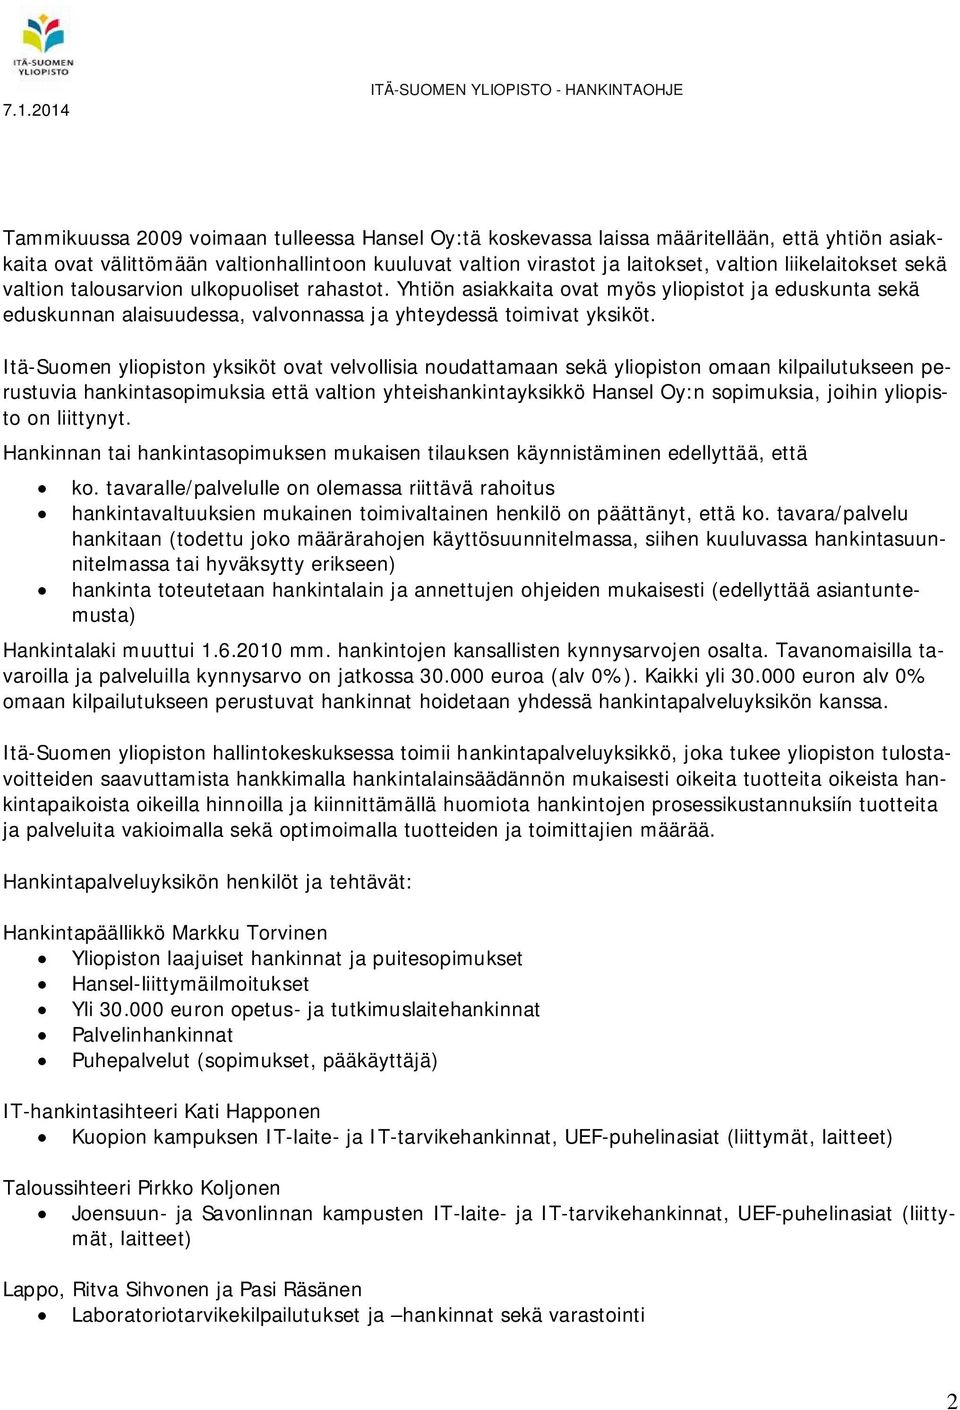 Itä-Suomen yliopiston yksiköt ovat velvollisia noudattamaan sekä yliopiston omaan kilpailutukseen perustuvia hankintasopimuksia että valtion yhteishankintayksikkö Hansel Oy:n sopimuksia, joihin